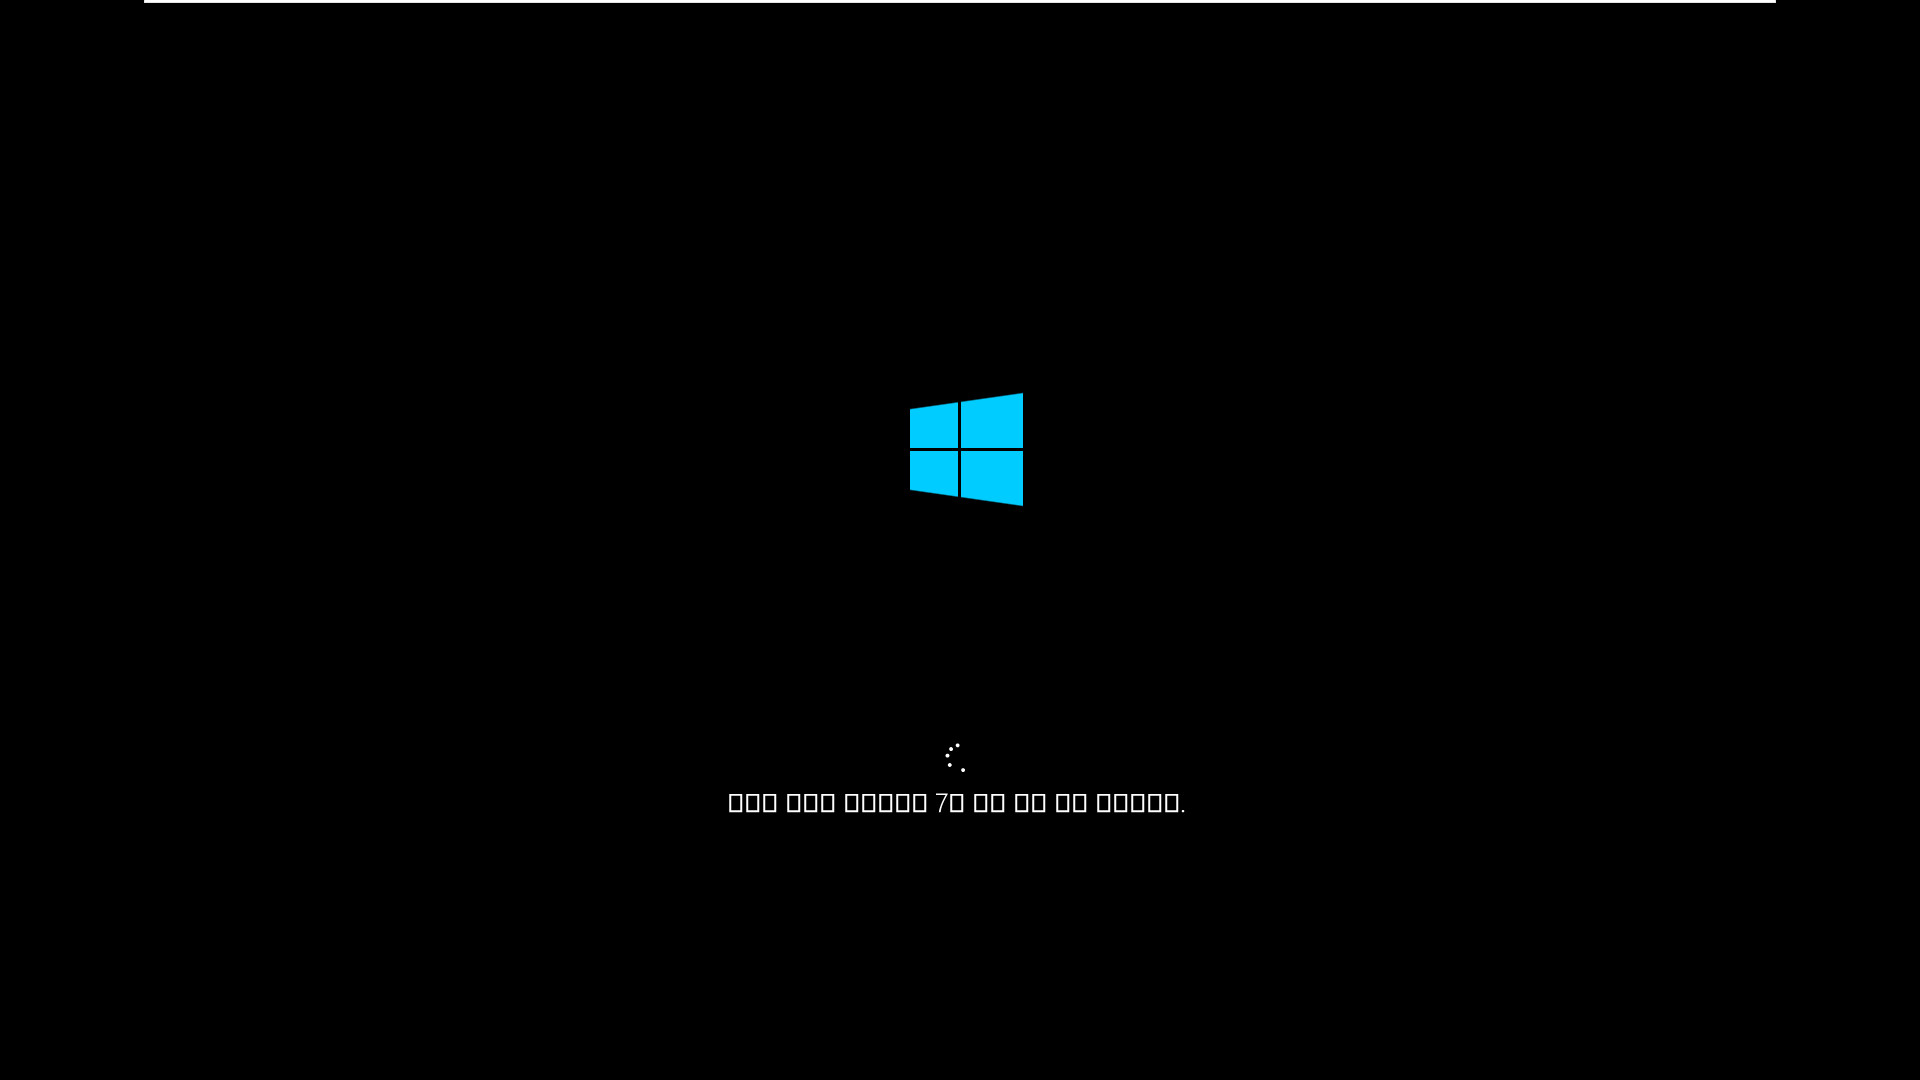 3.Kong_Windows10_v2009_19042.610_x64.vhd 에 Imagew64.exe 으로 복구하여 부팅 테스트 2020-11-07_222959.jpg